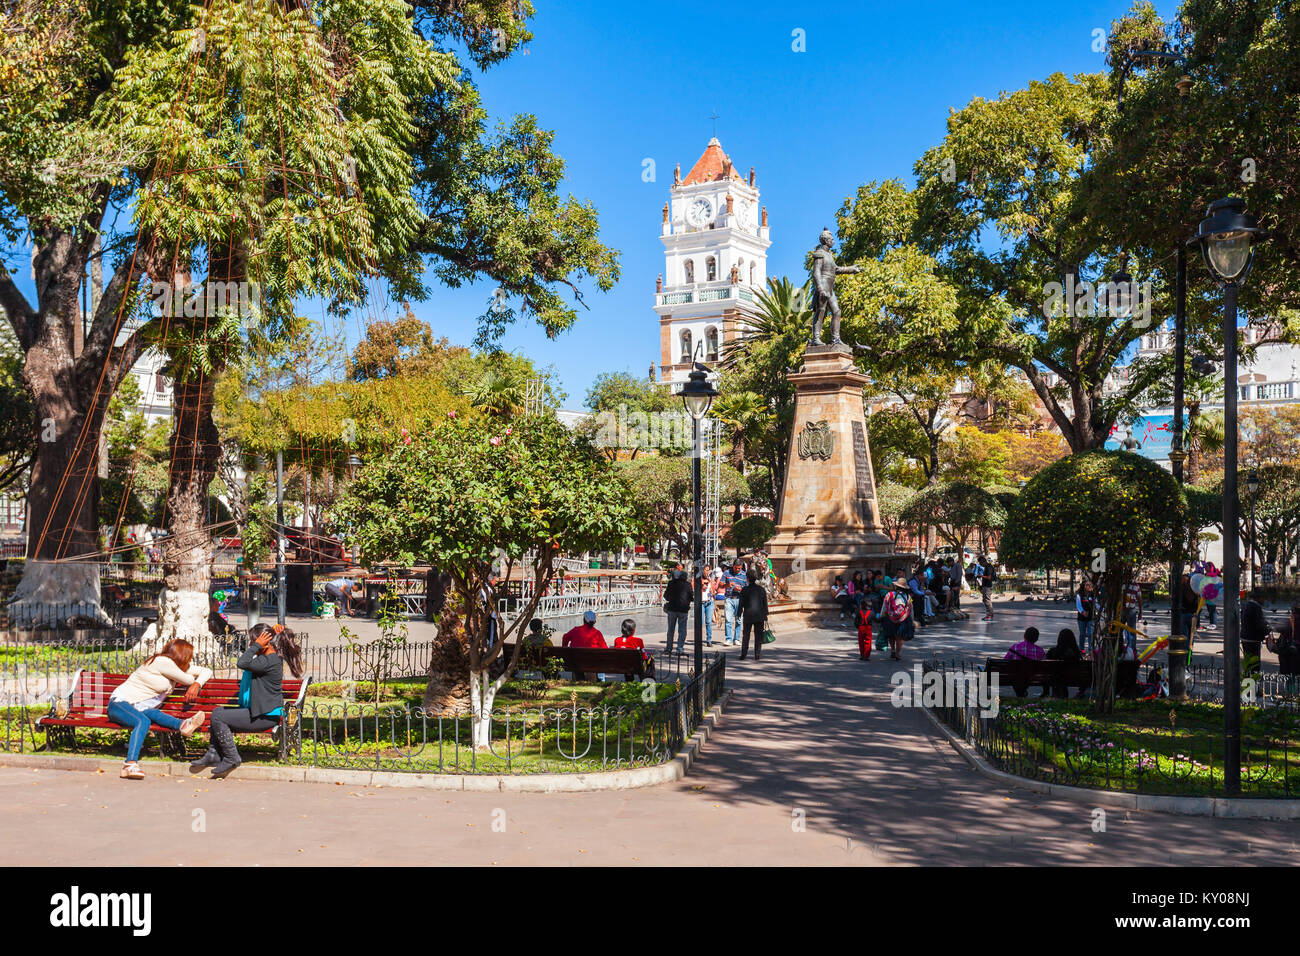 SUCRE, BOLIVIA - Mayo 22, 2015: Plaza 25 de mayo plaza es una plaza principal en Sucre, Bolivia. Foto de stock